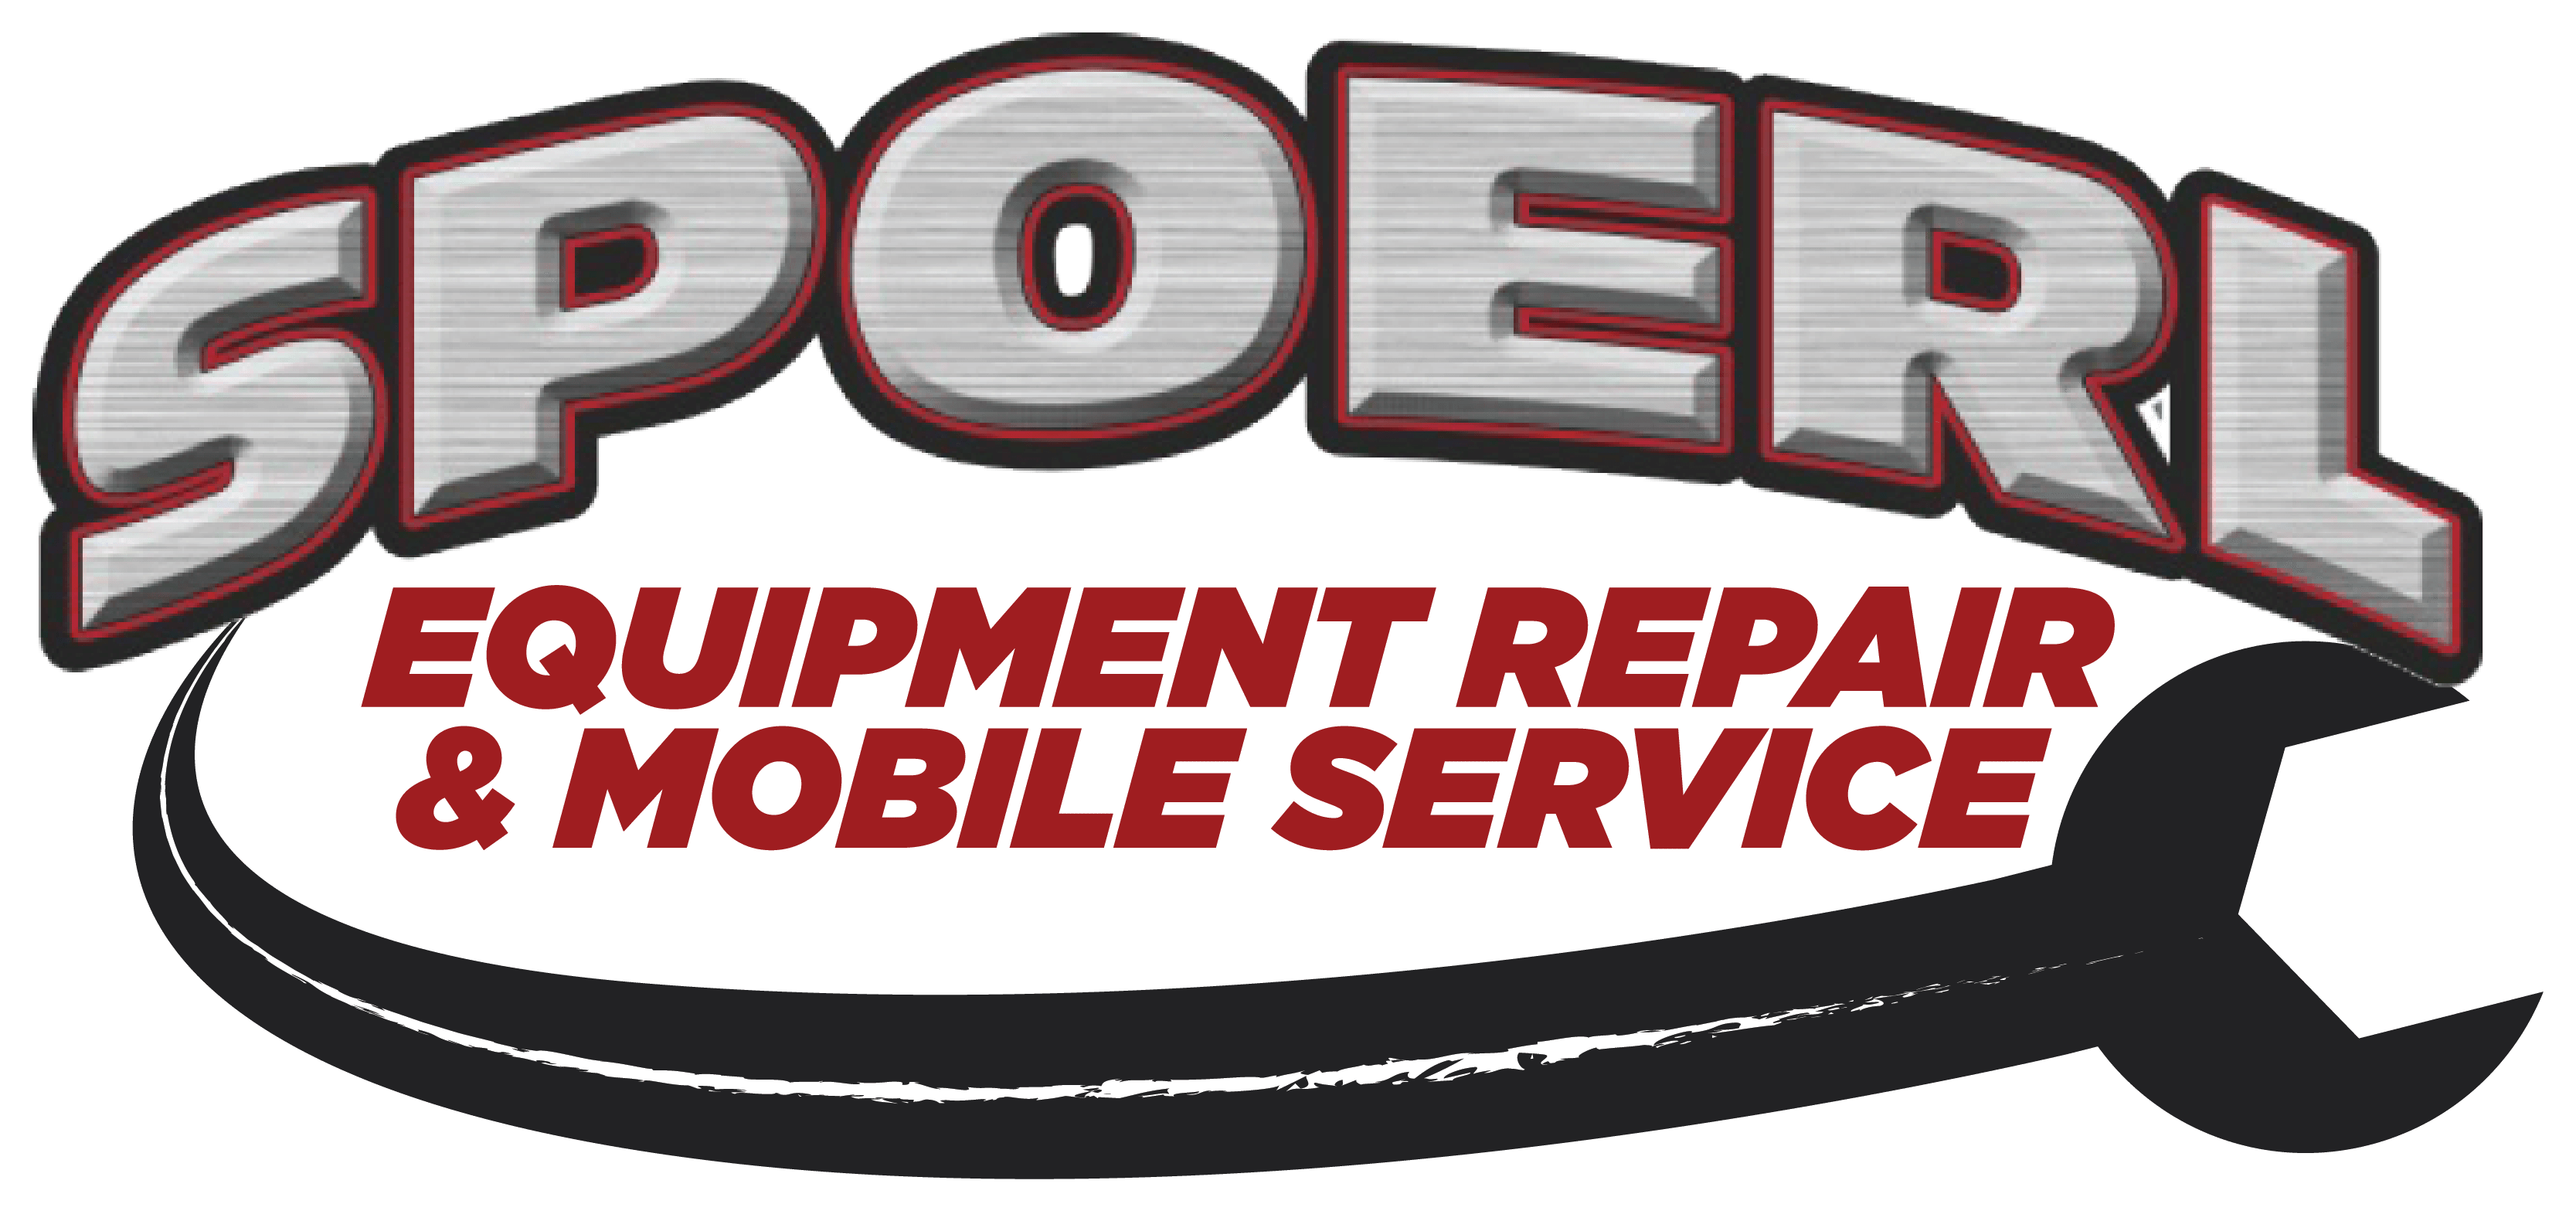 Spoerl Equipment Repair & Mobile Service